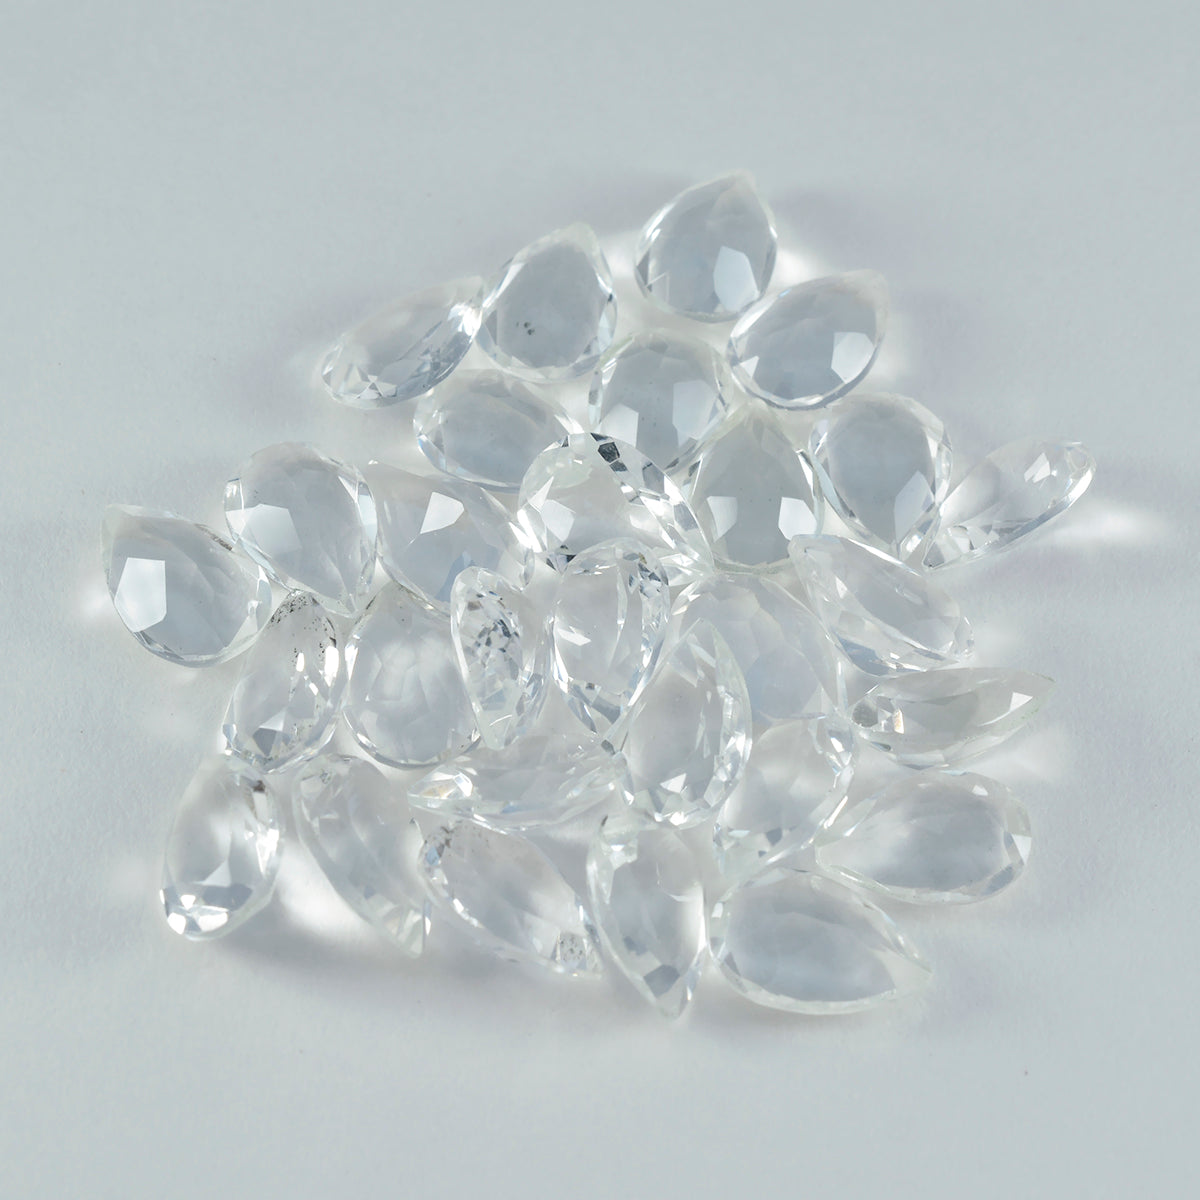 Riyogems 1 Stück weißer Kristallquarz, facettiert, 6 x 9 mm, Birnenform, fantastischer Qualitätsstein